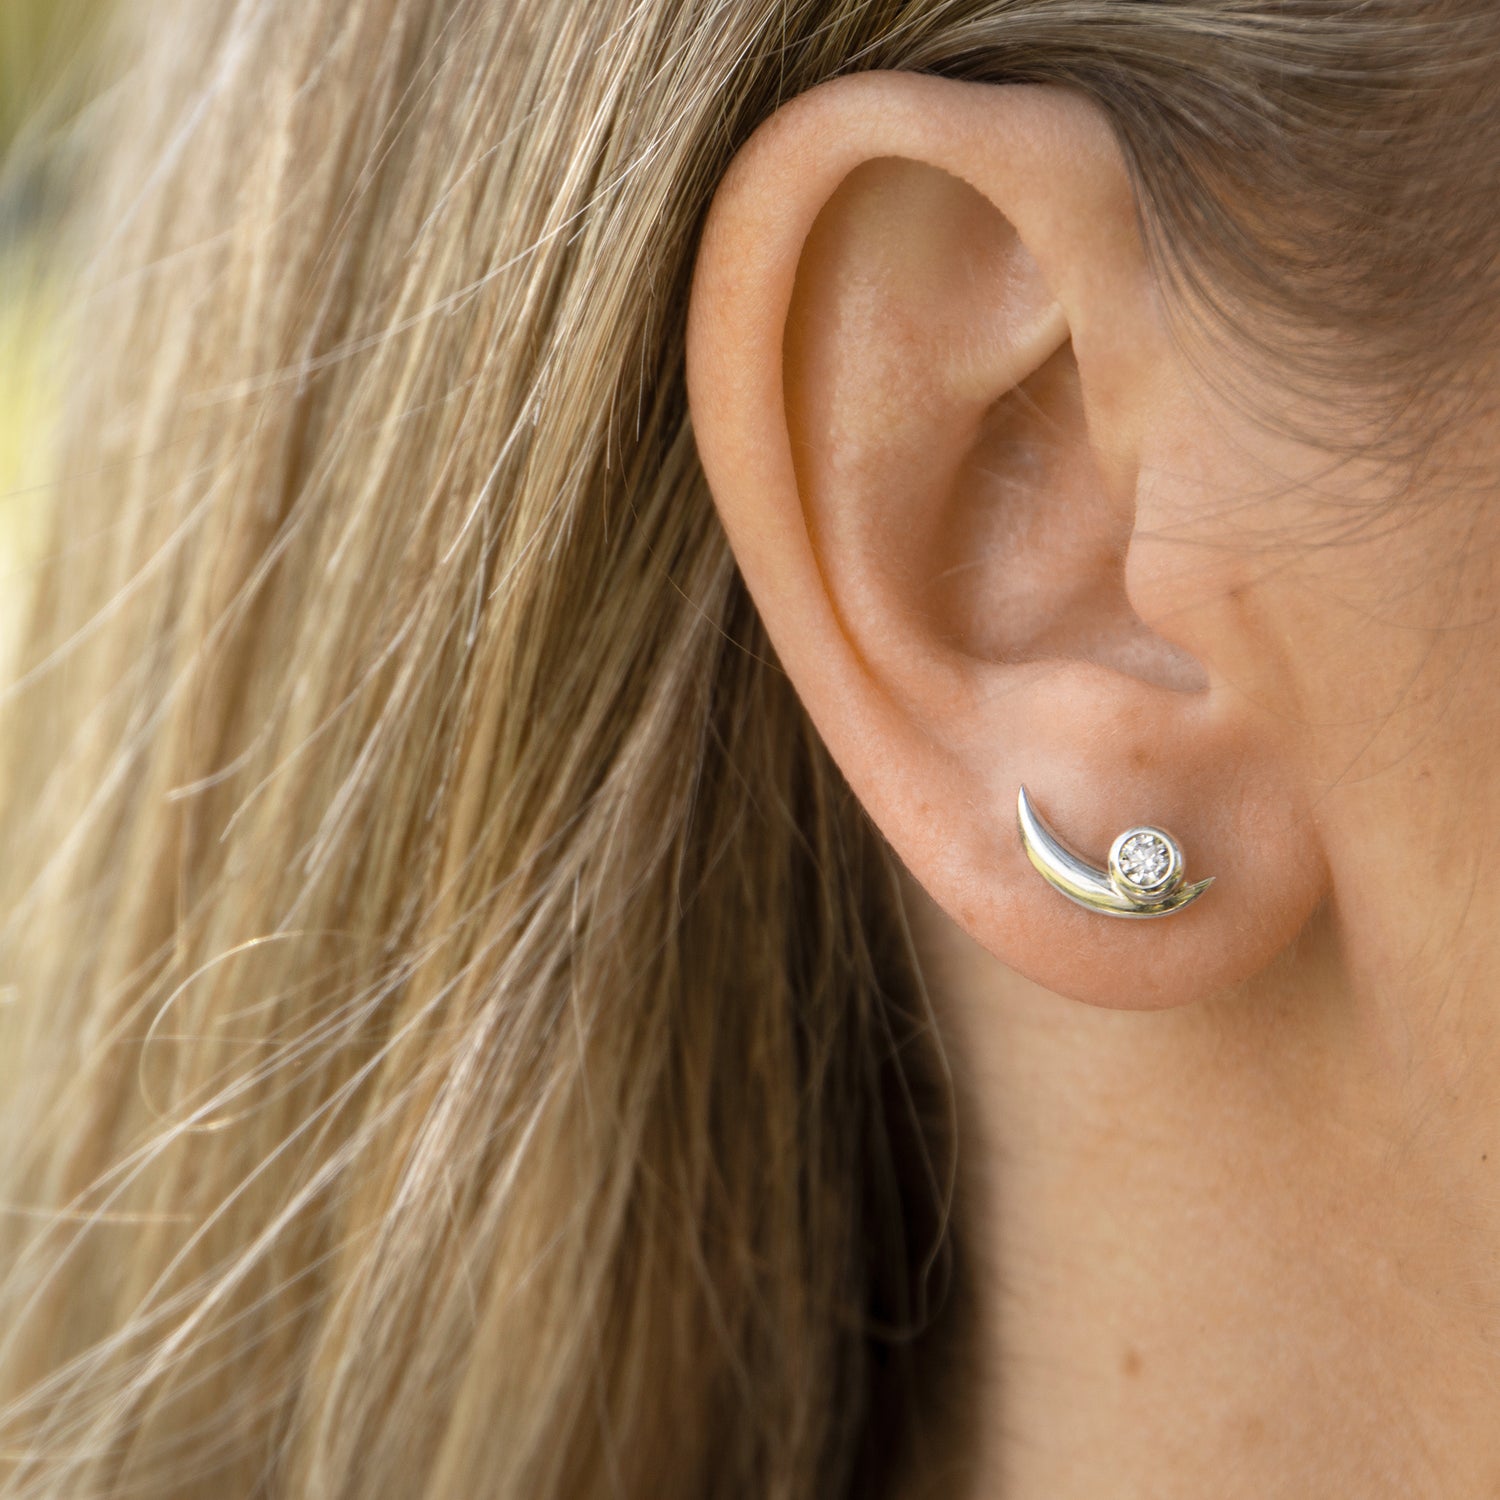 Solid white gold bezel set diamond earring on the ear